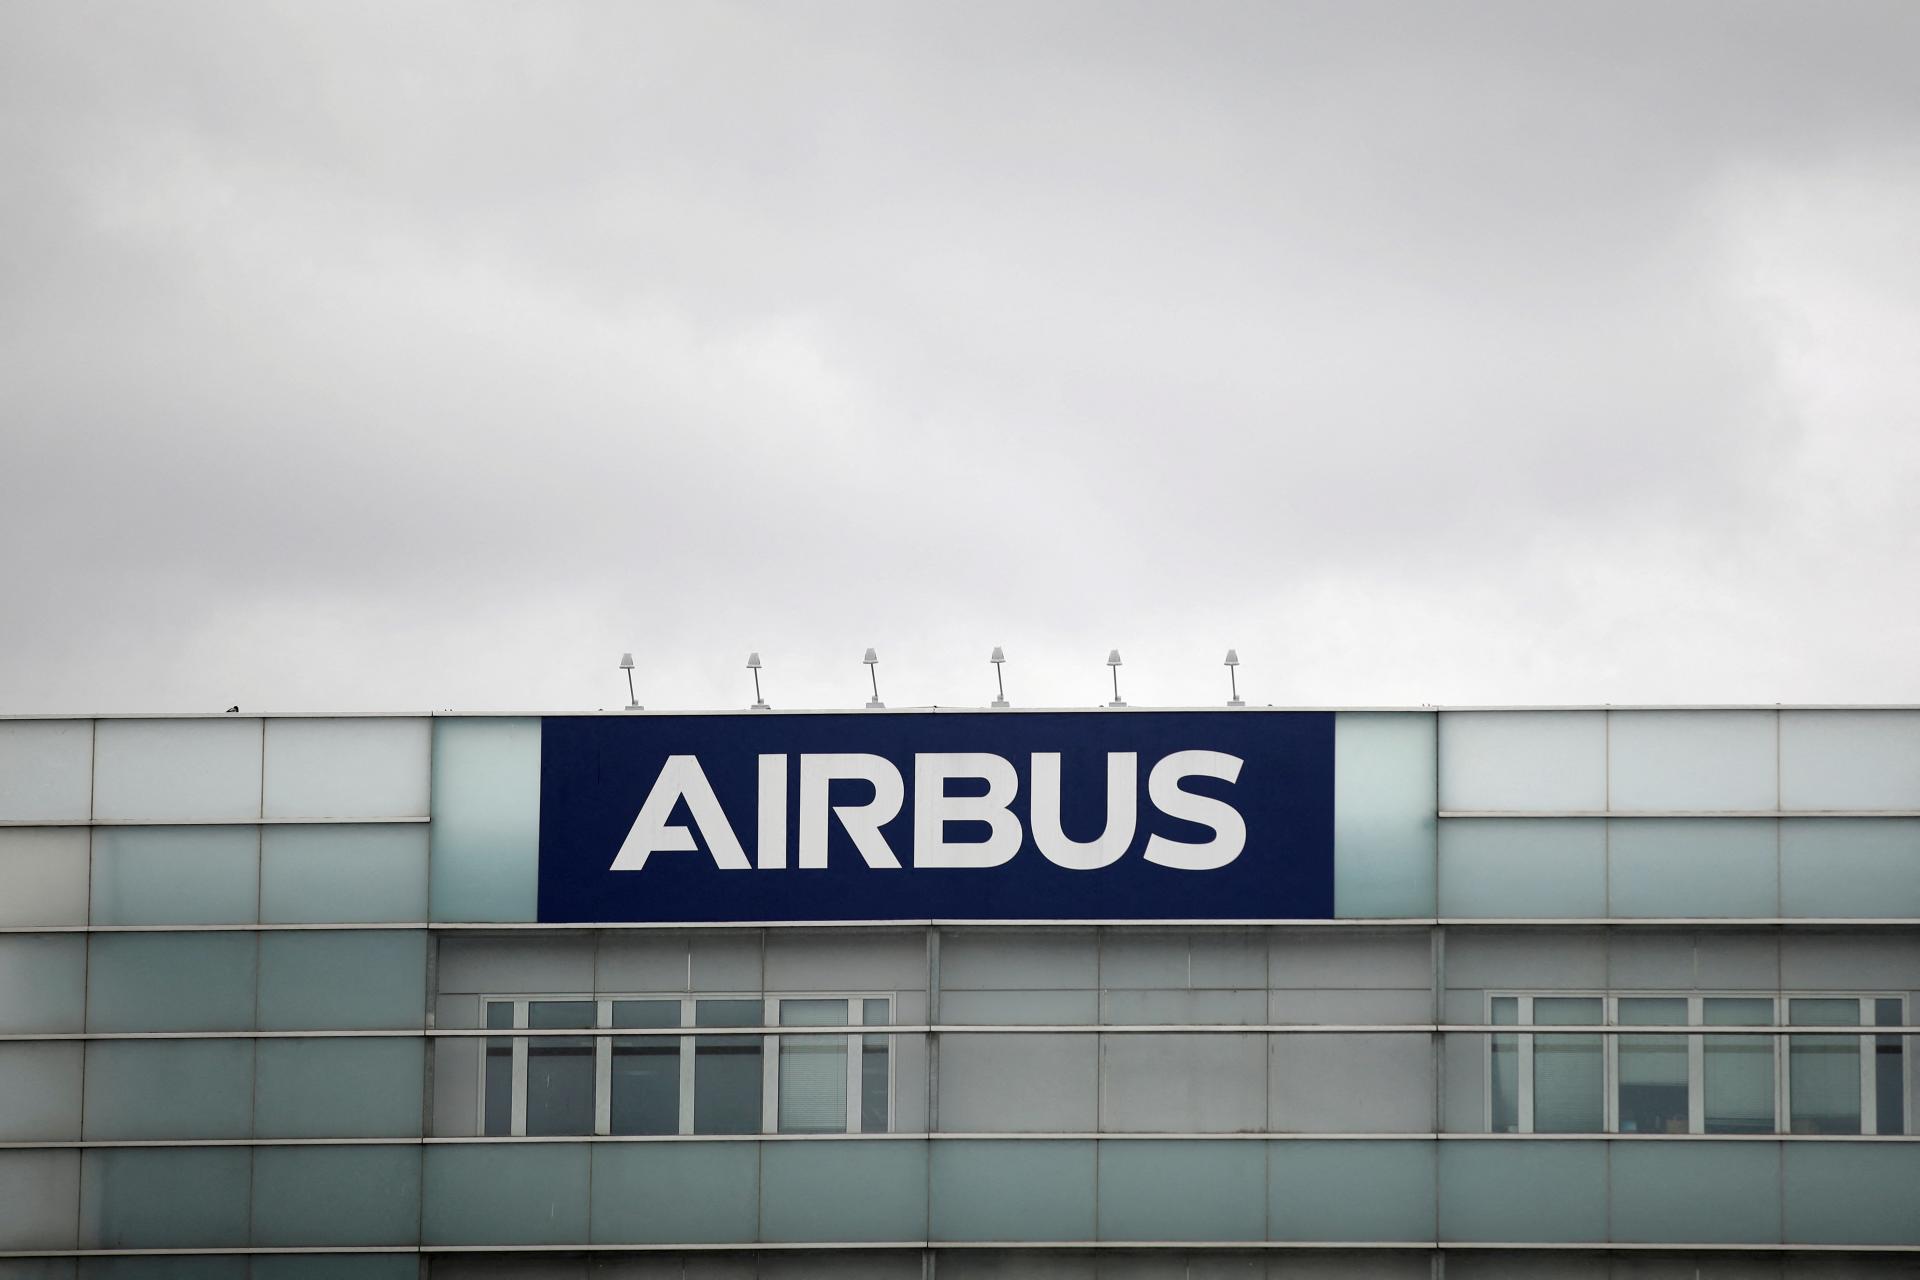 Airbus vykázal vyšší ako očakávaný zisk za druhý štvrťrok